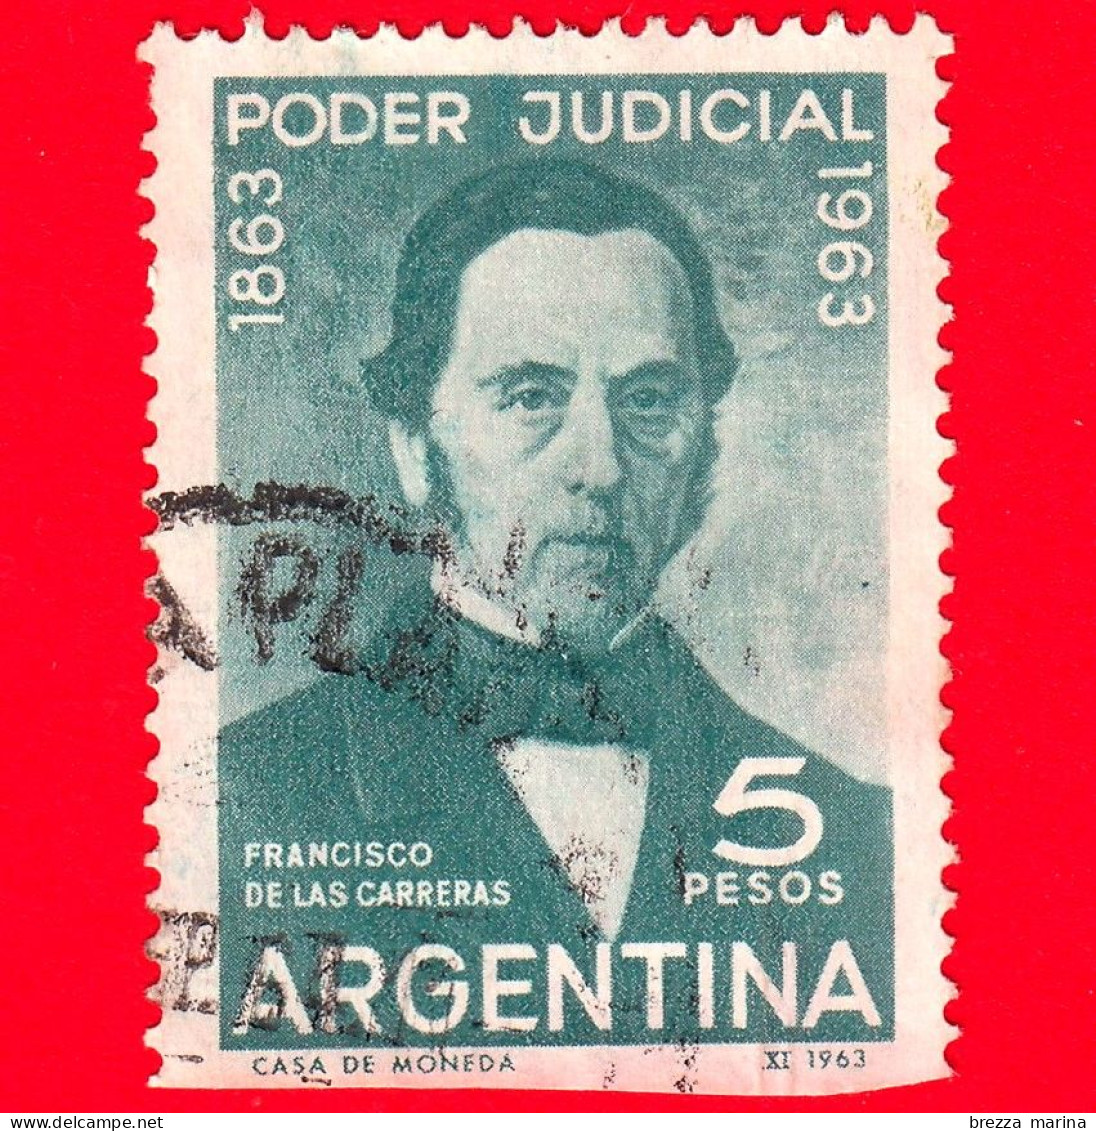 ARGENTINA - Usato - 1963 - Centenario Della Magistratura Argentina - F. De Las Carreras - 5 - Vedi ... - Usati